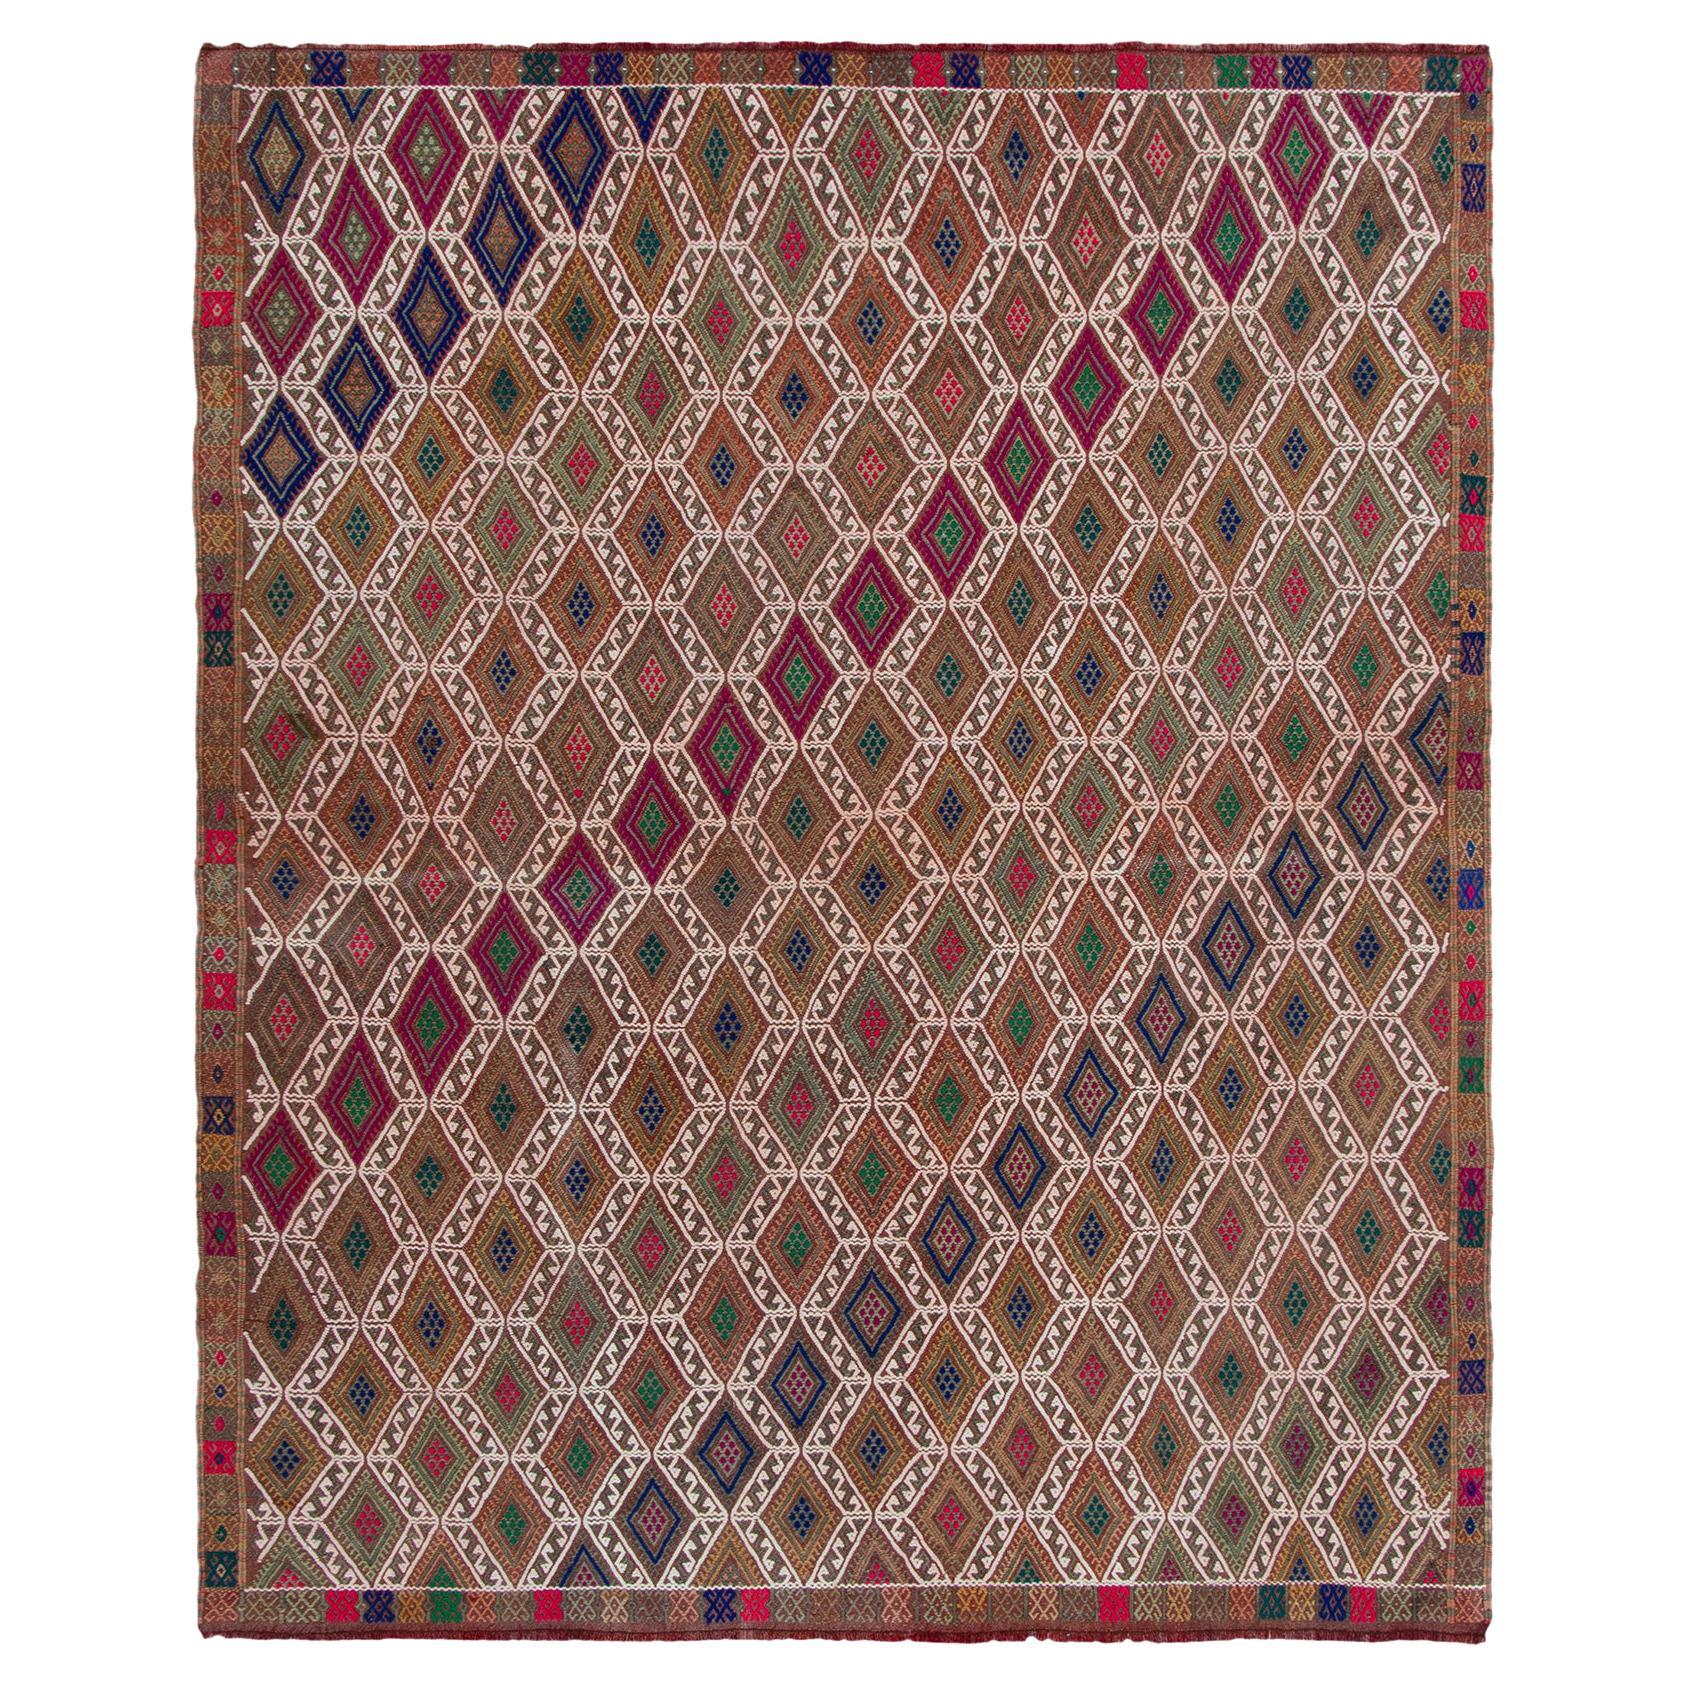 Bestickter Vintage-Kelim-Teppich in Braun, Weiß mit geometrischem Muster von Teppich & Kelim